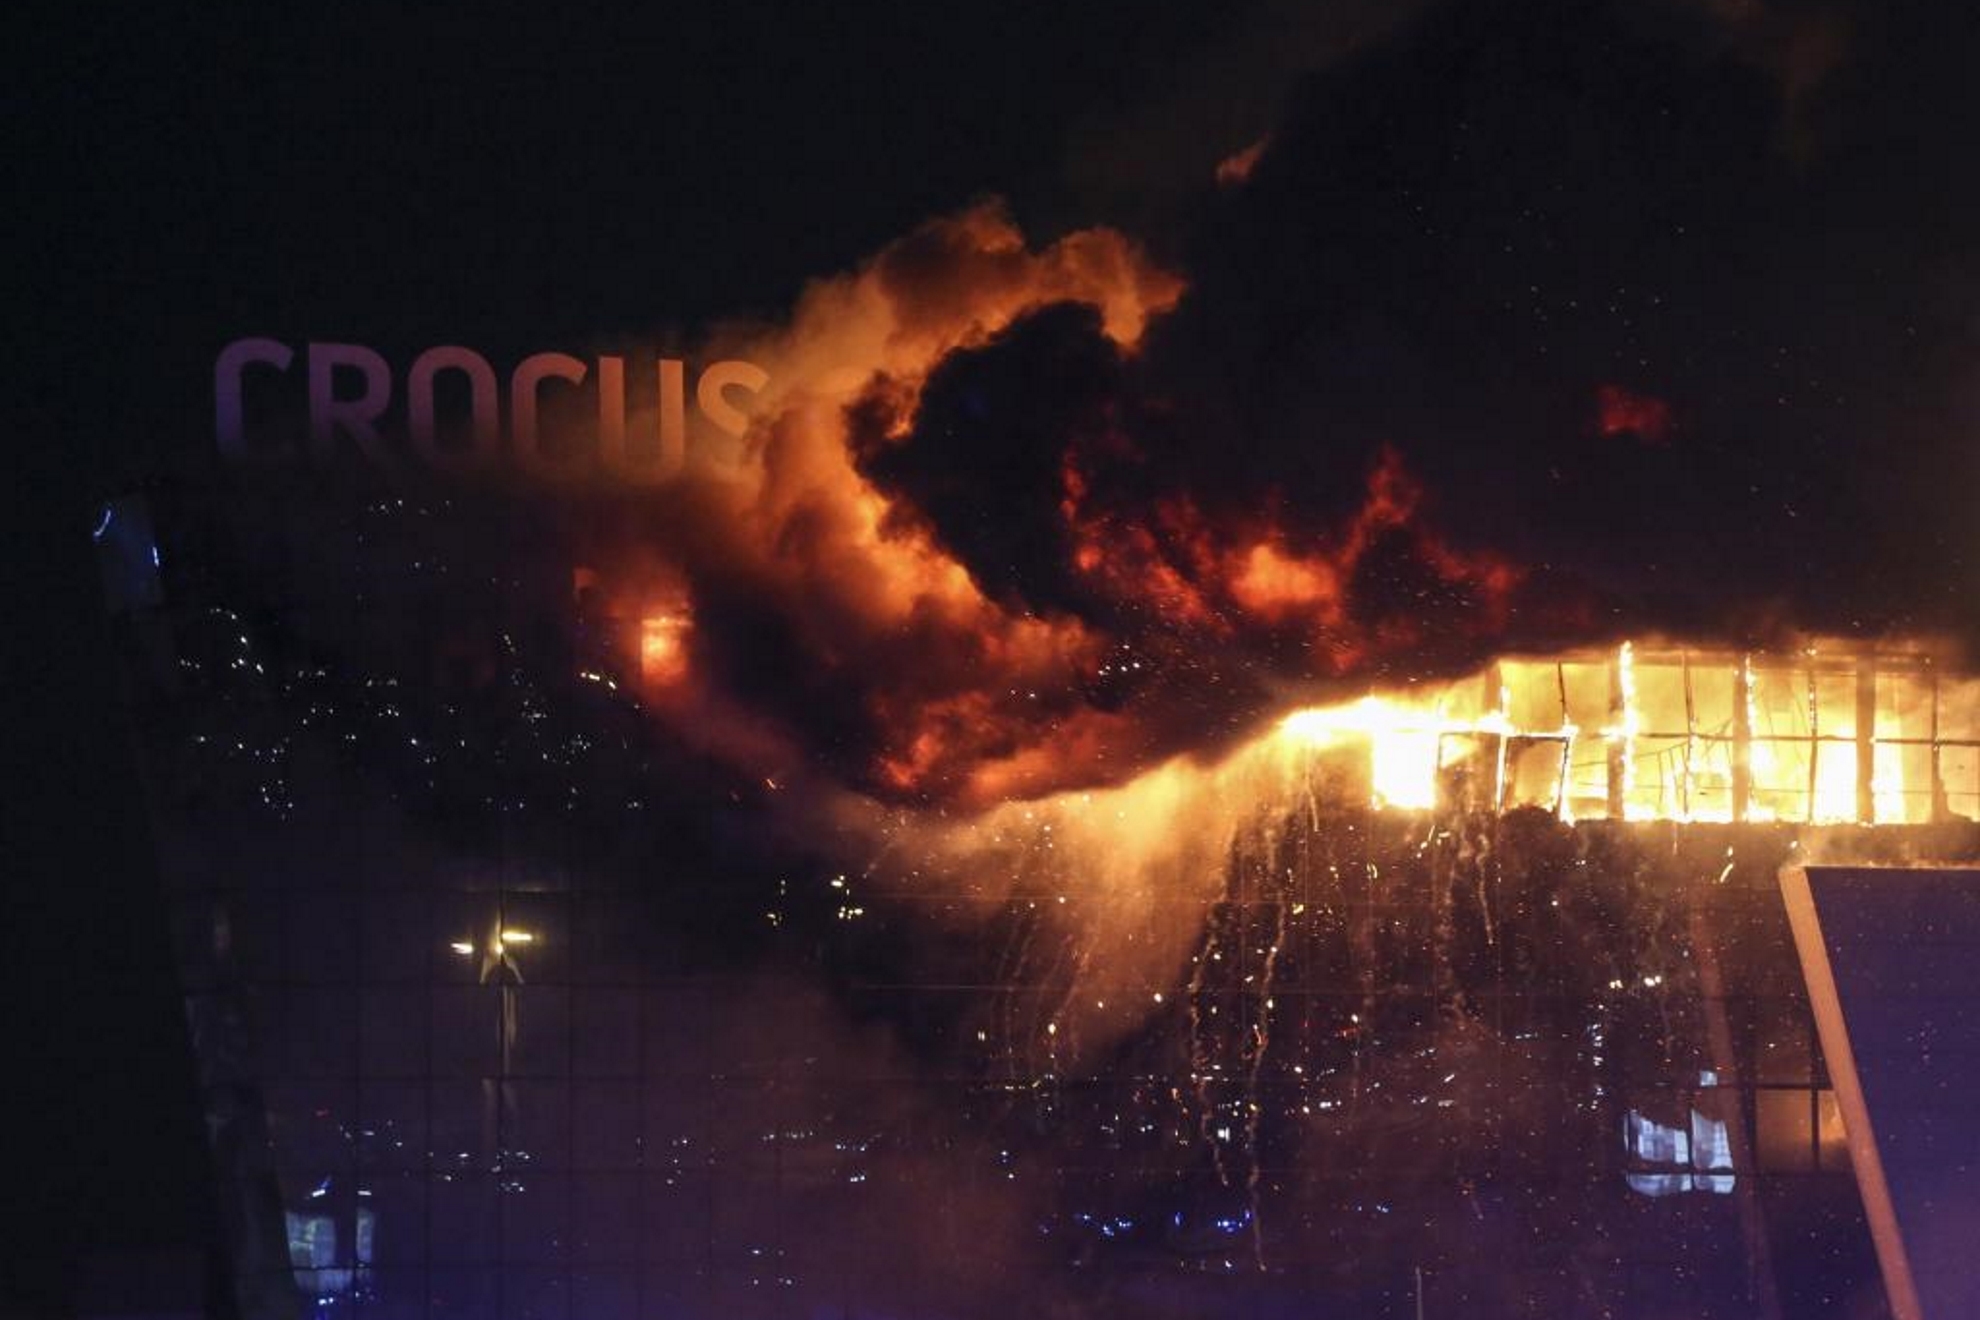 Imagen del incendio en el Crocus City Hall.